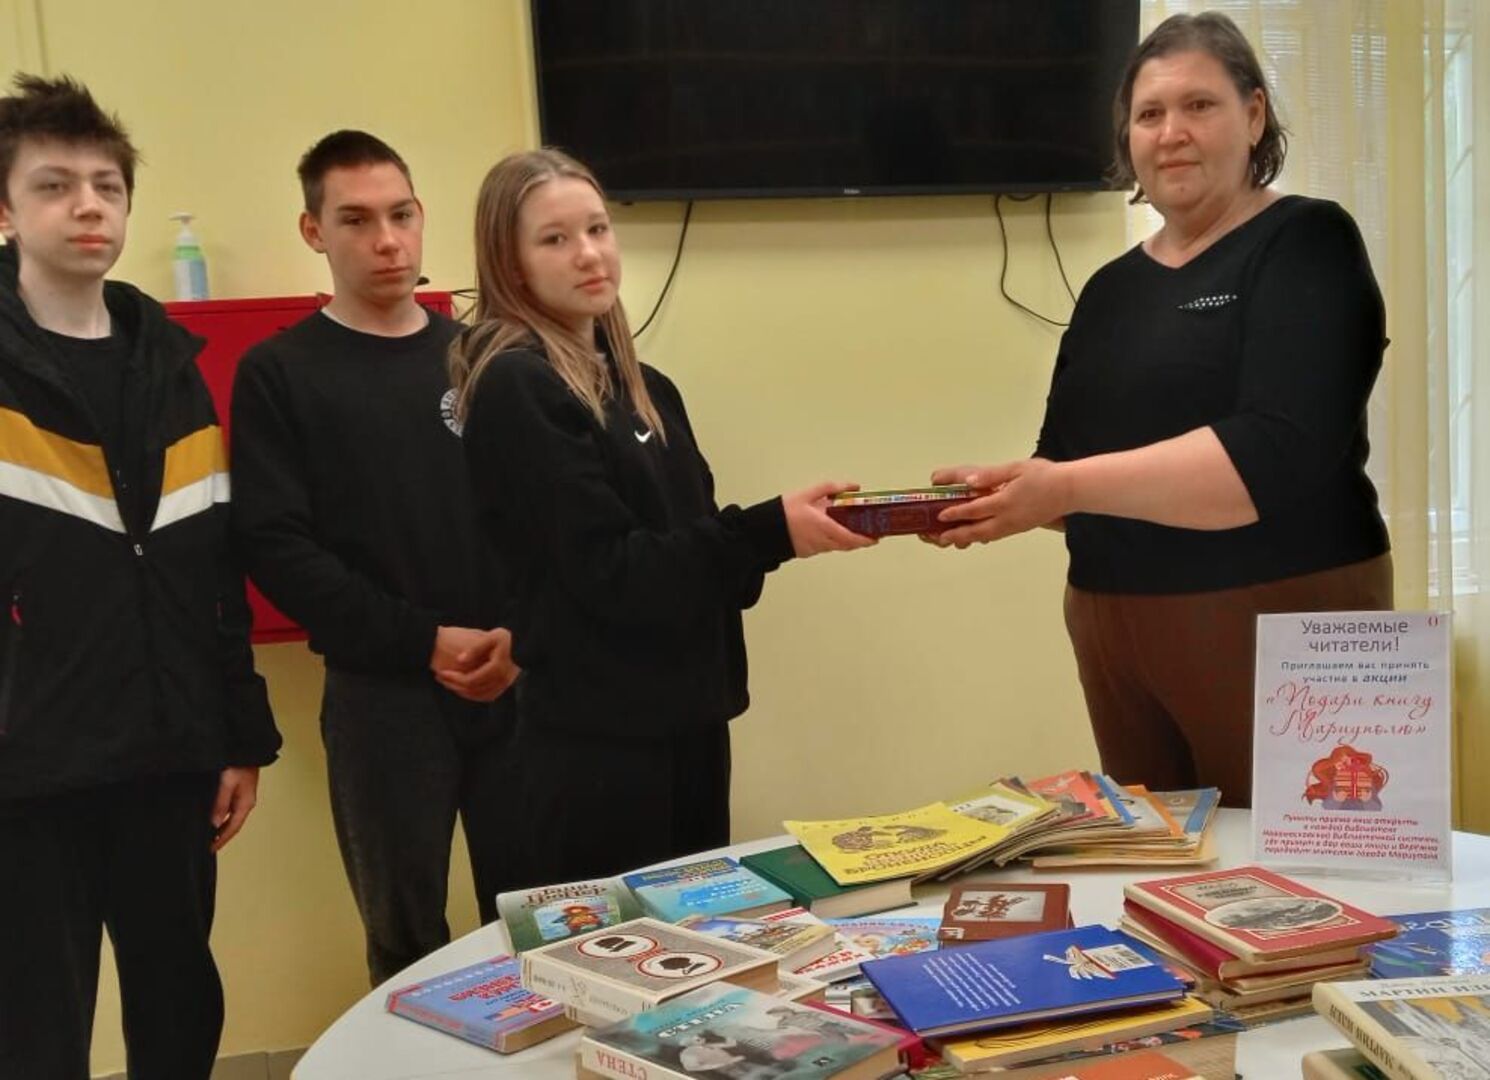  Читатели городской библиотеки № 16 присоединились к благотворительной акции «Подари книгу Мариуполю» (0+)